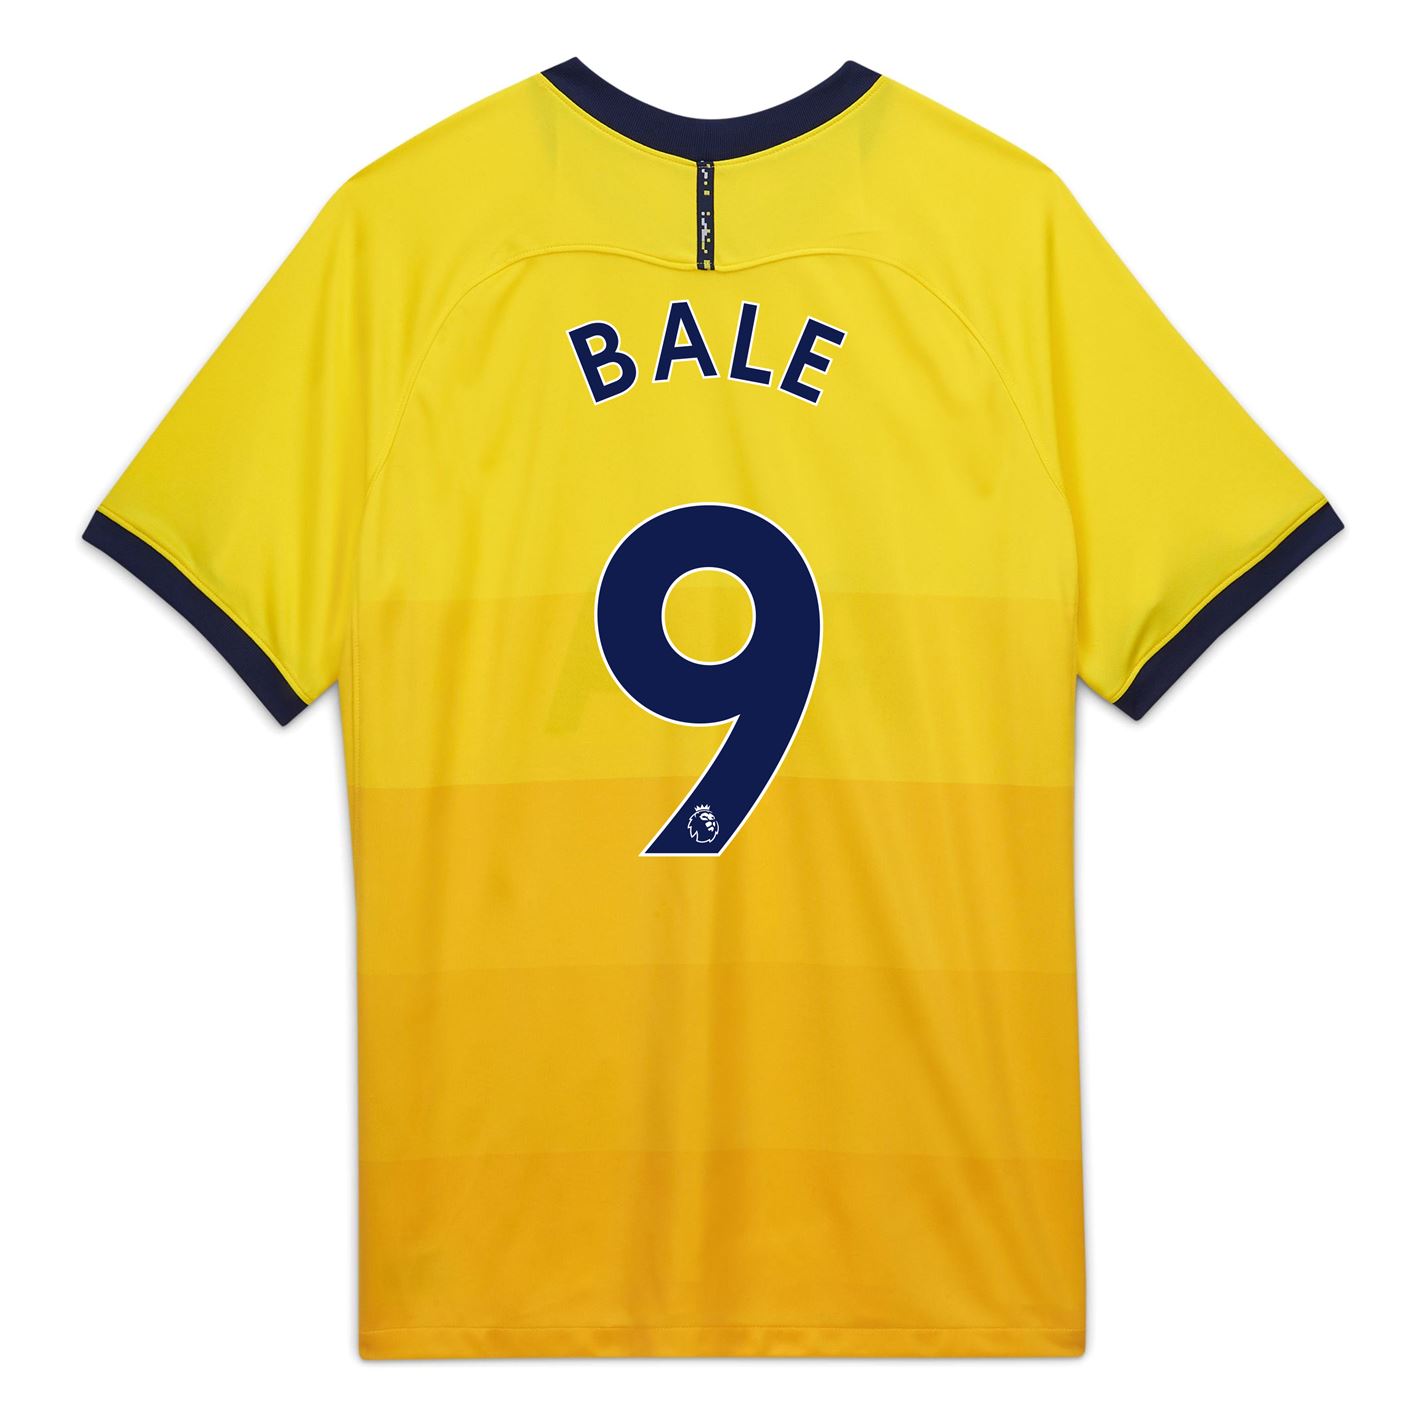 Tricou Nike Tottenham Hotspur Gareth Bale Third 2020 2021 Junior